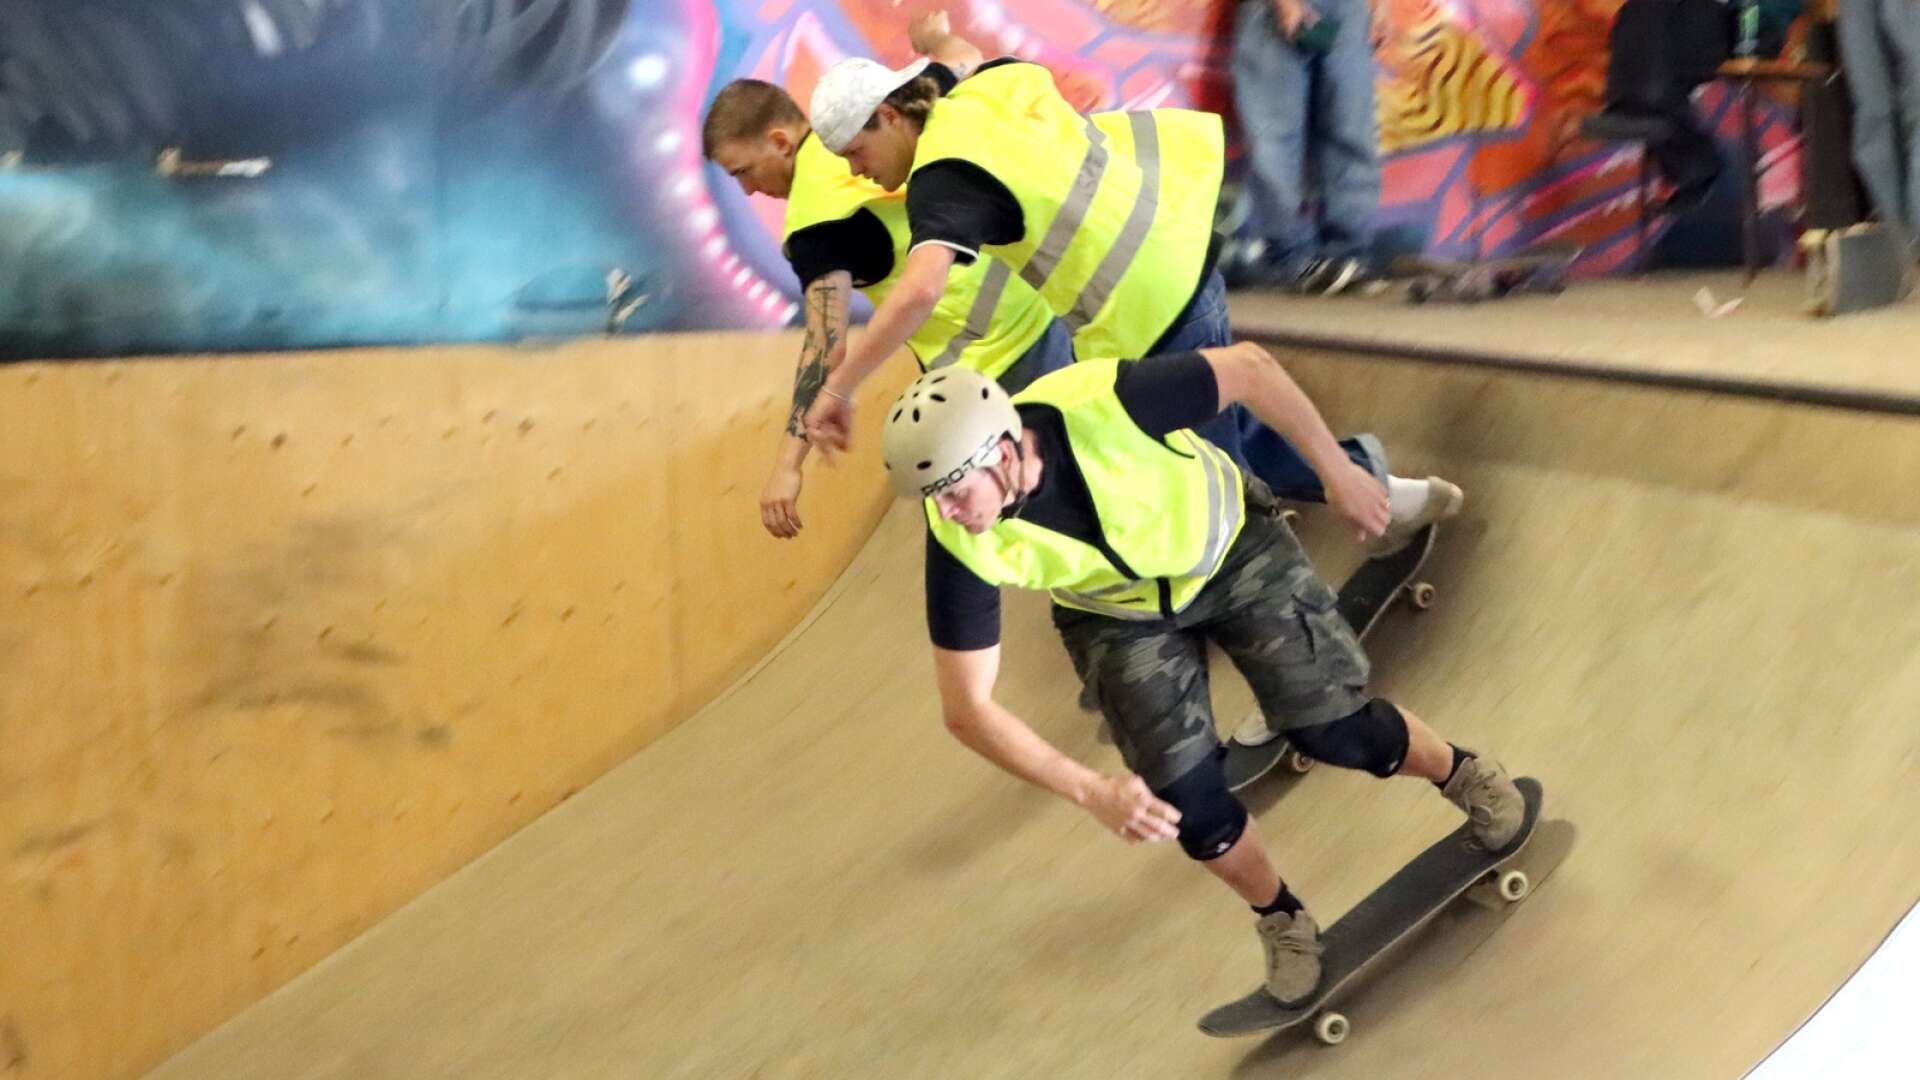 Skövde skateboardförening anordnade tävlingen Skatefest. En sommartävling som lockar folk från när och fjärran.